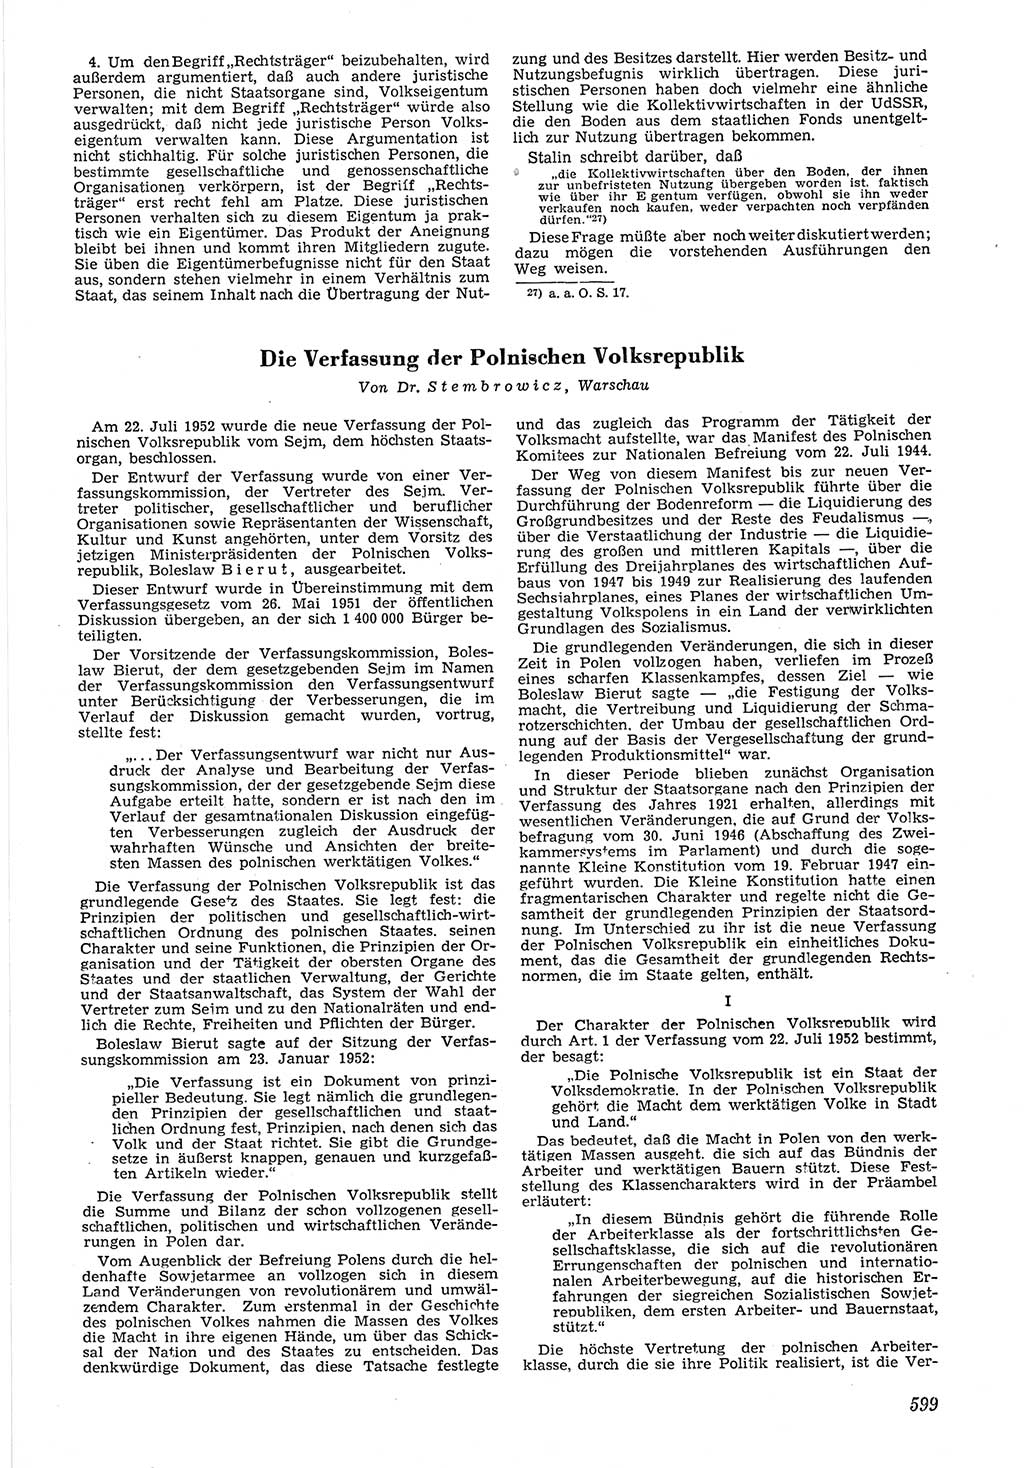 Neue Justiz (NJ), Zeitschrift für Recht und Rechtswissenschaft [Deutsche Demokratische Republik (DDR)], 6. Jahrgang 1952, Seite 599 (NJ DDR 1952, S. 599)